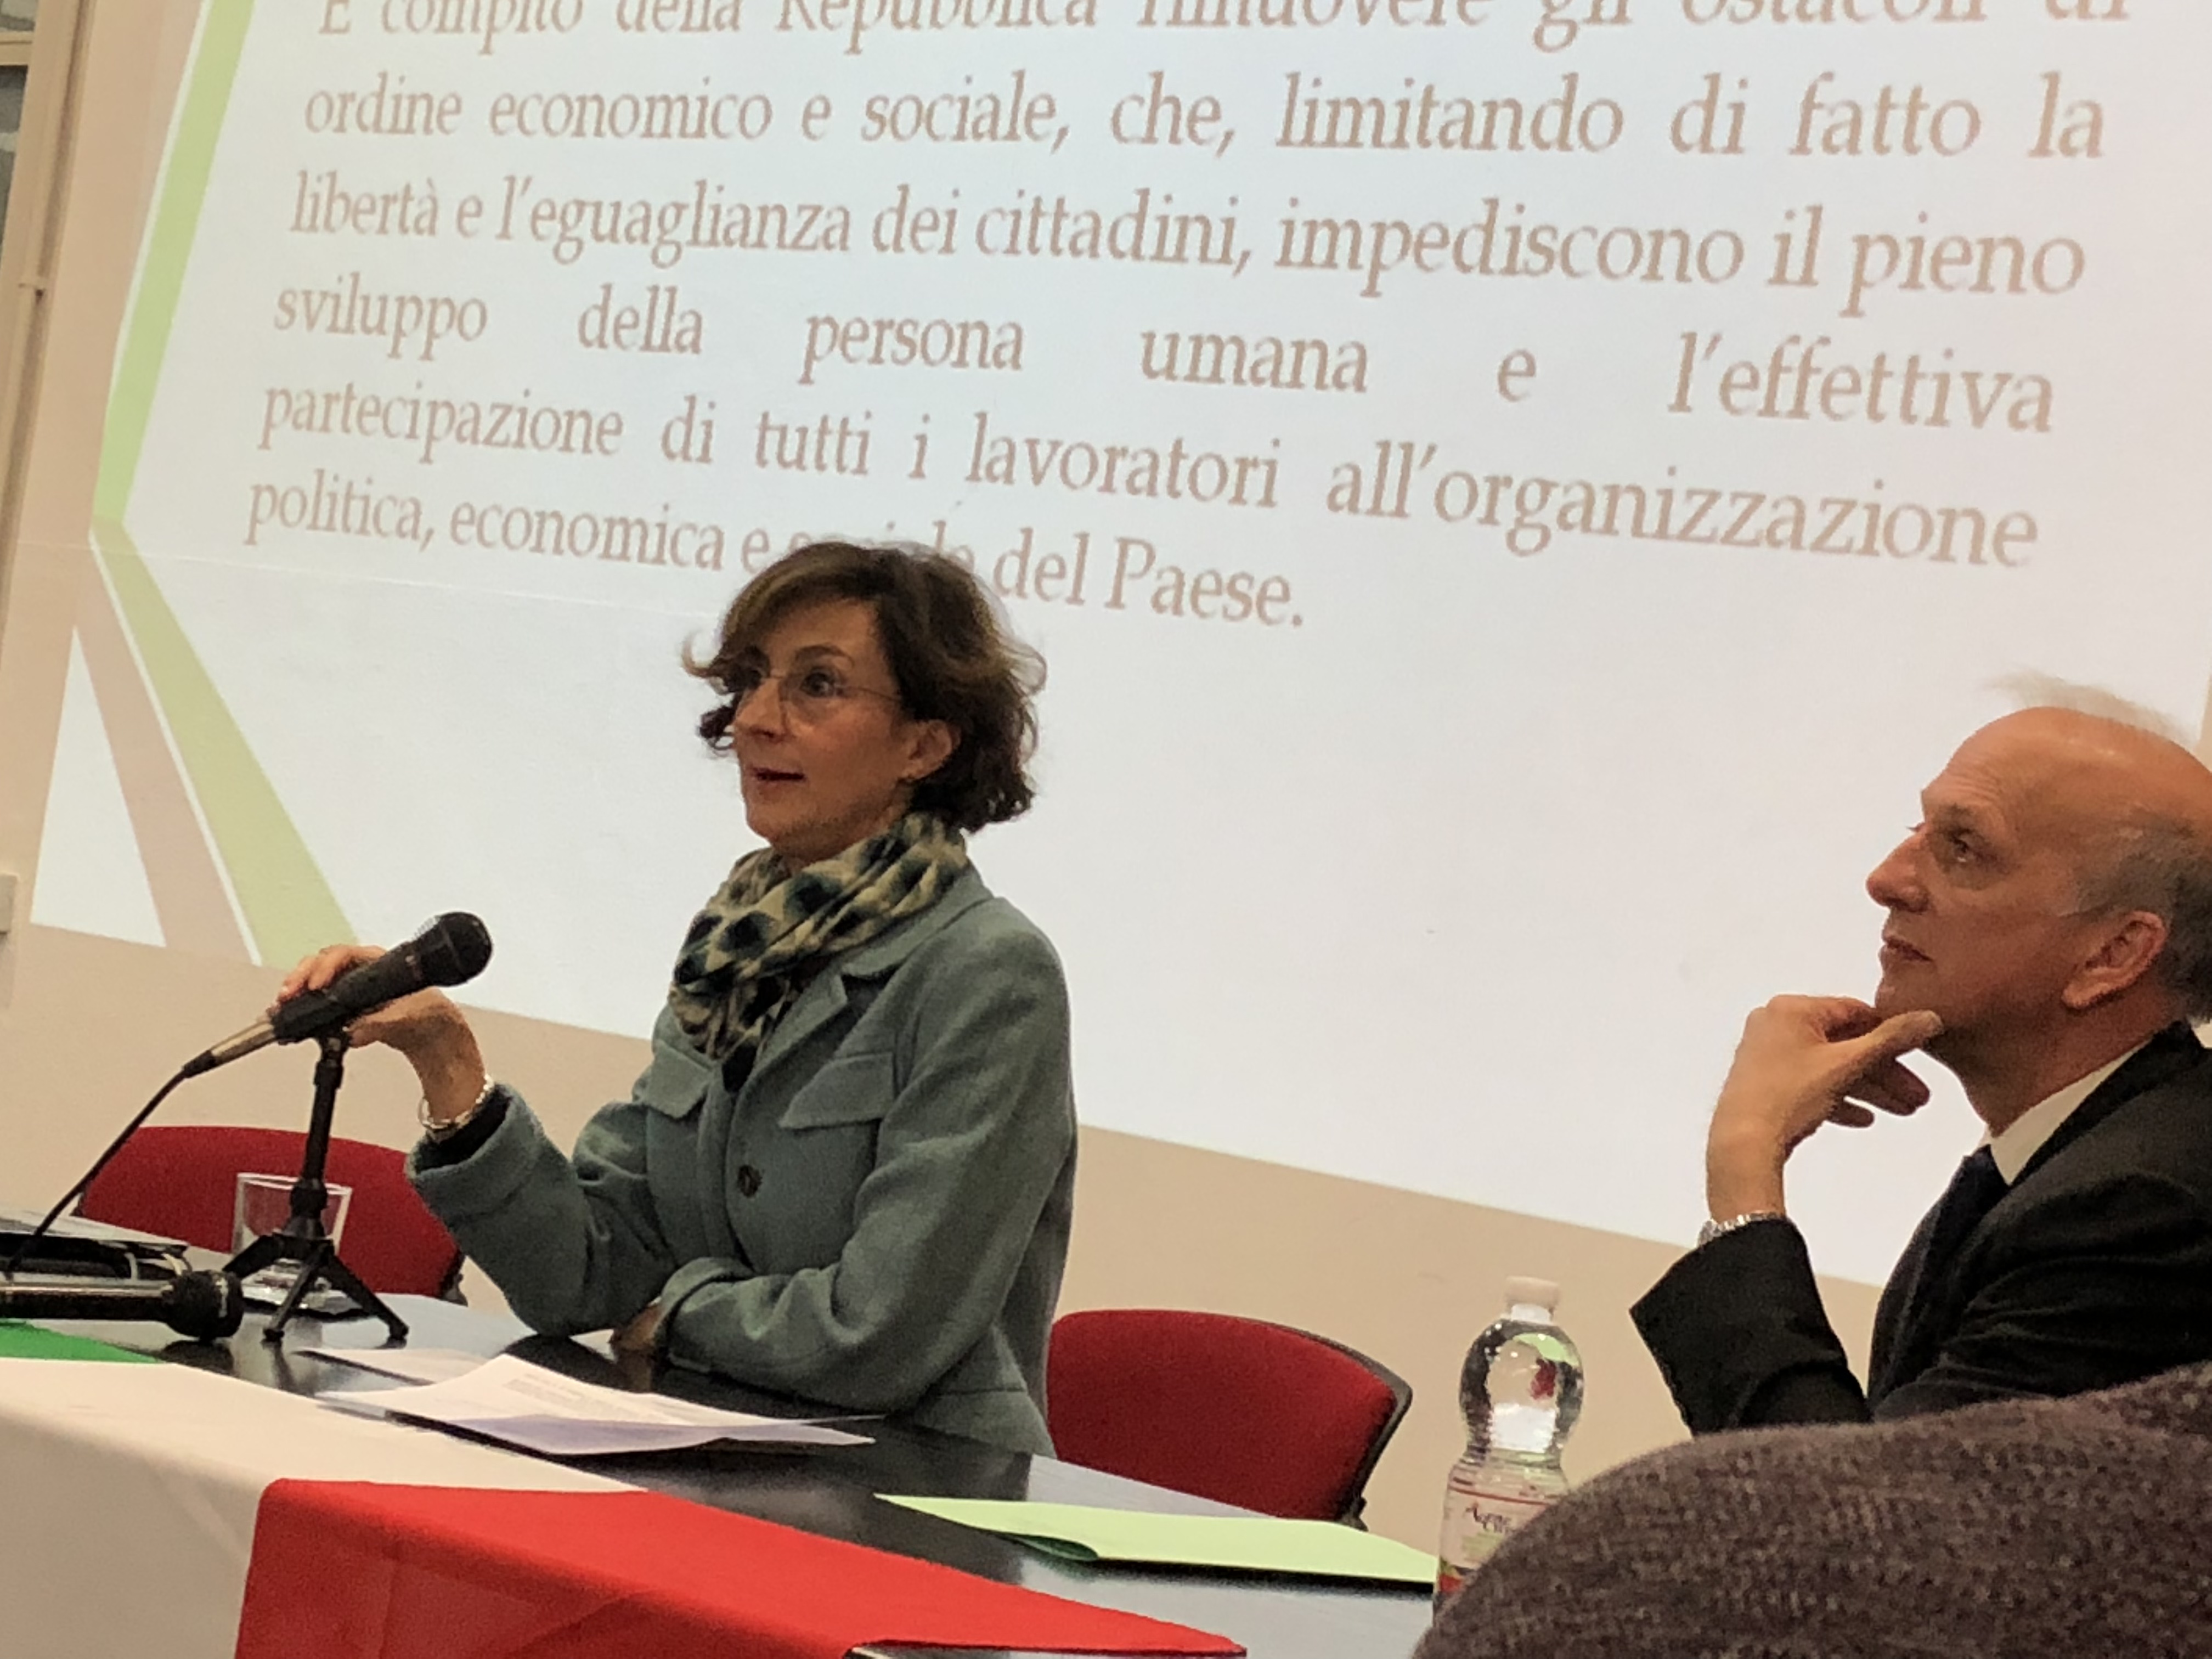 14 febbraio 2018-“Viaggio in Italia: la Corte costituzionale nelle scuole”- Istituto Marignoni Polo, Milano 